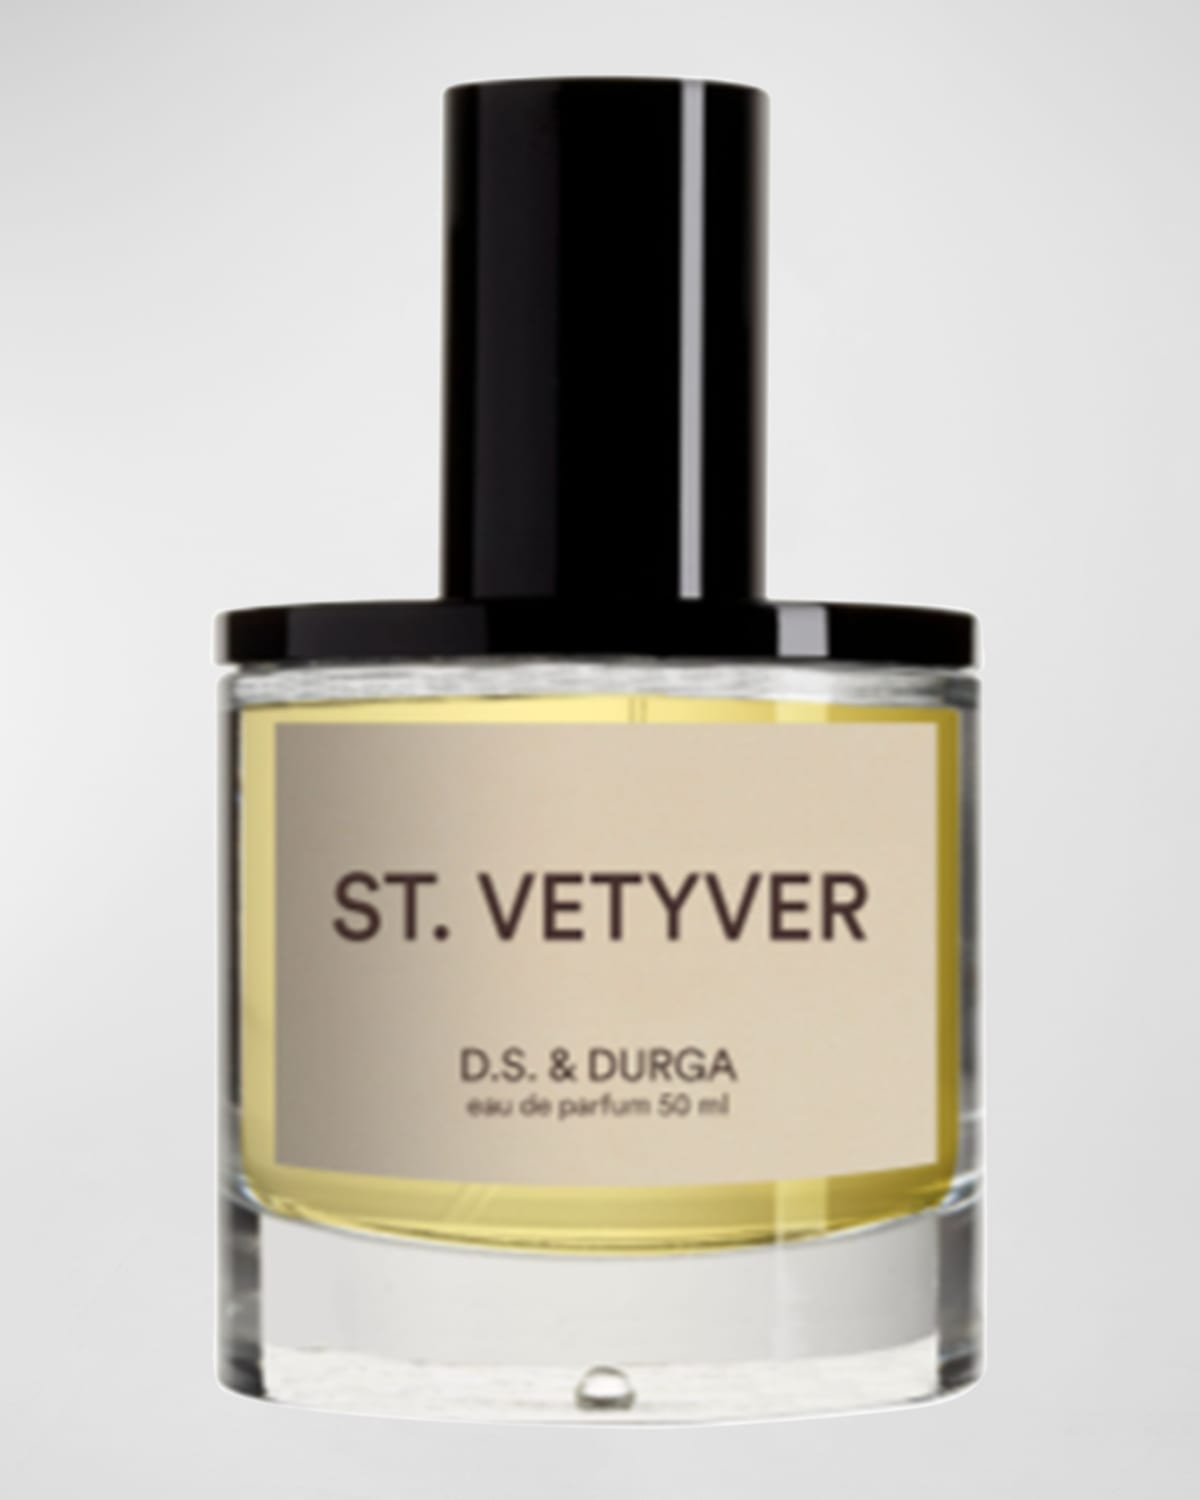 D.S. & DURGA St Vetyver Eau de Parfum, 1.7 oz.